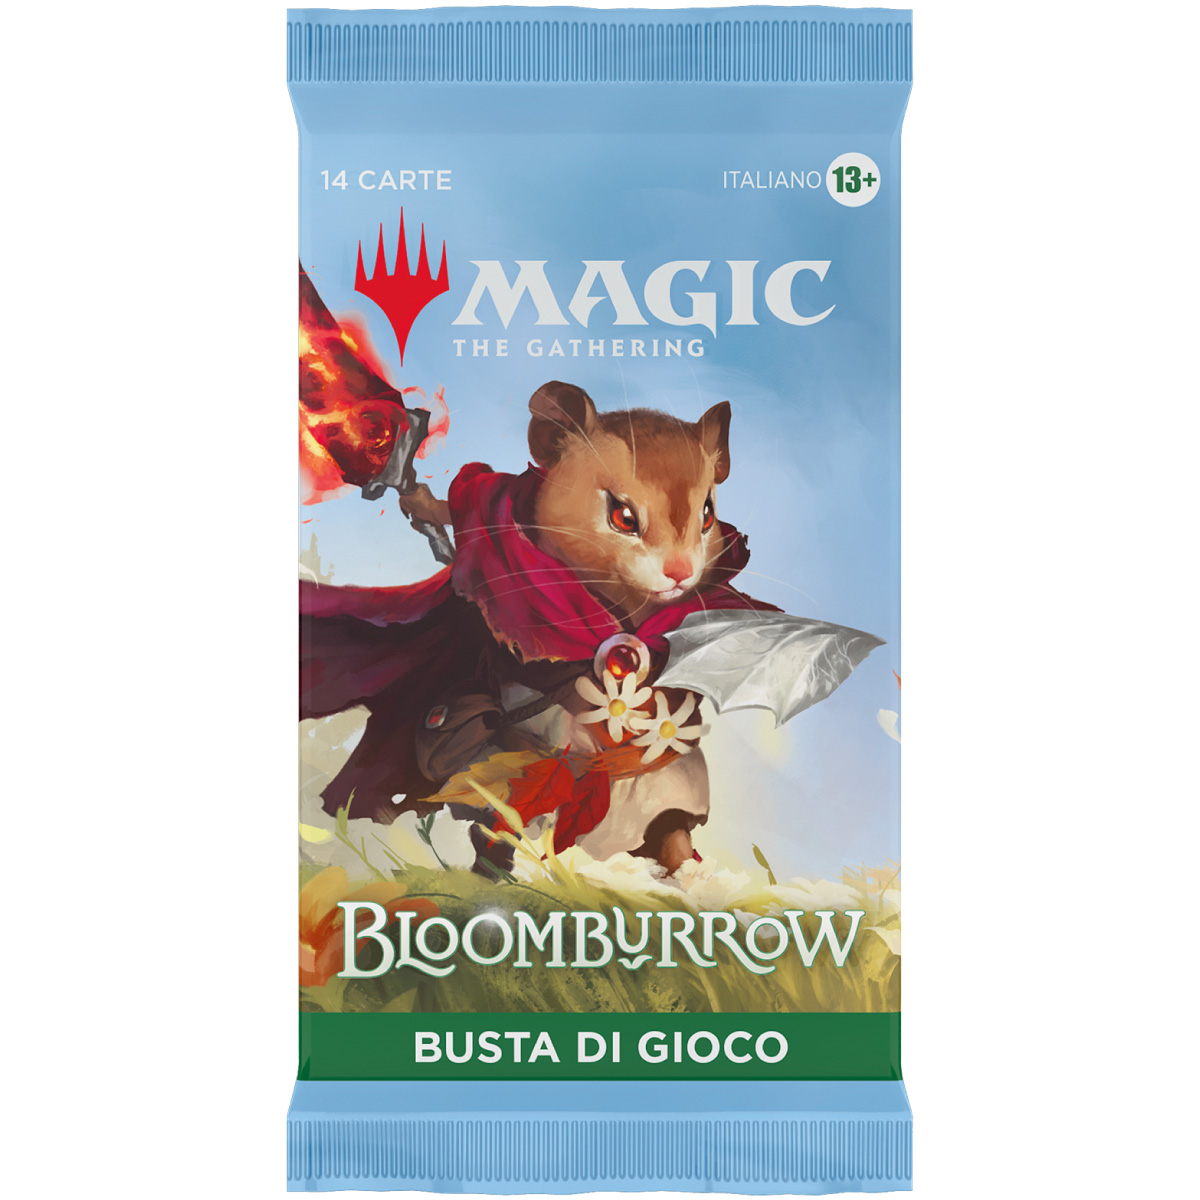 magic the gathering - bloomburrow - busta di gioco - case sigillato 6x box 36 buste (ita)